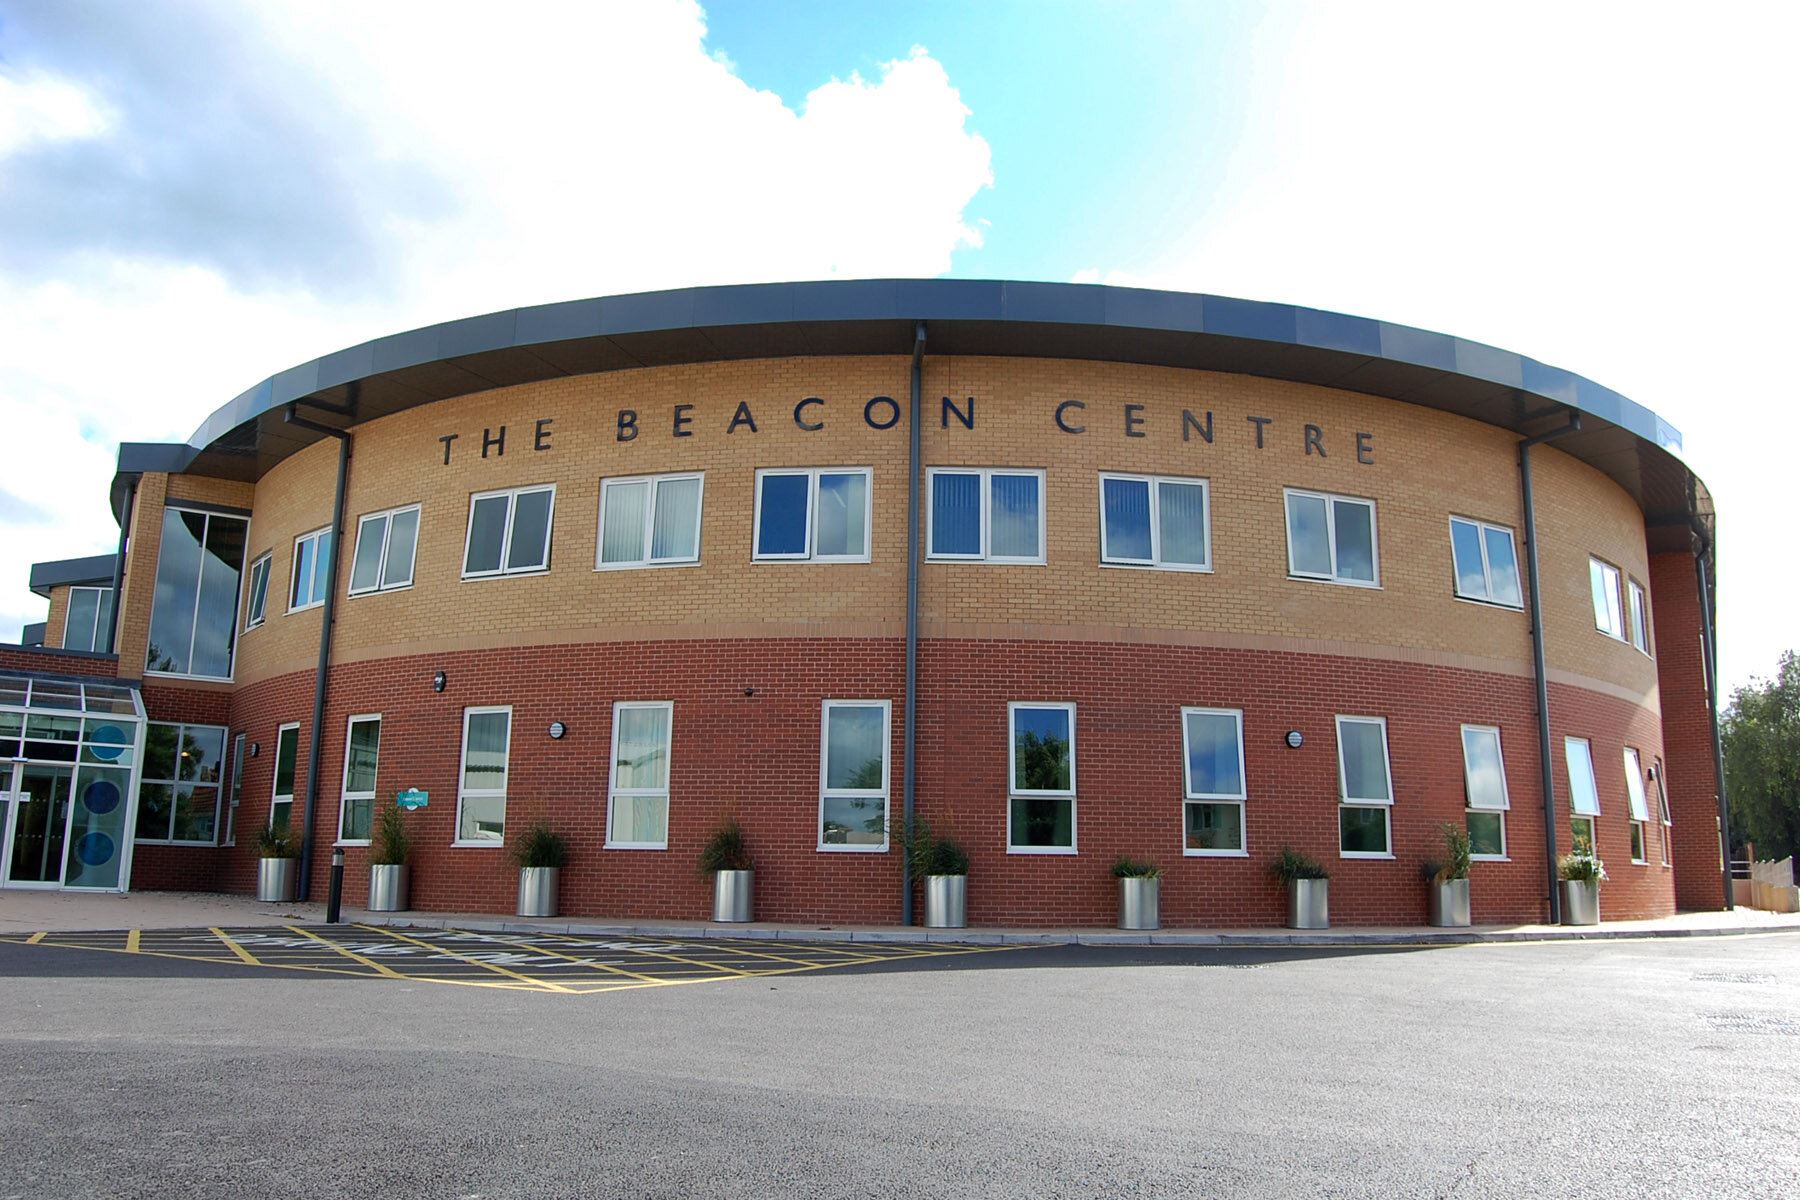 The Beacon Centre